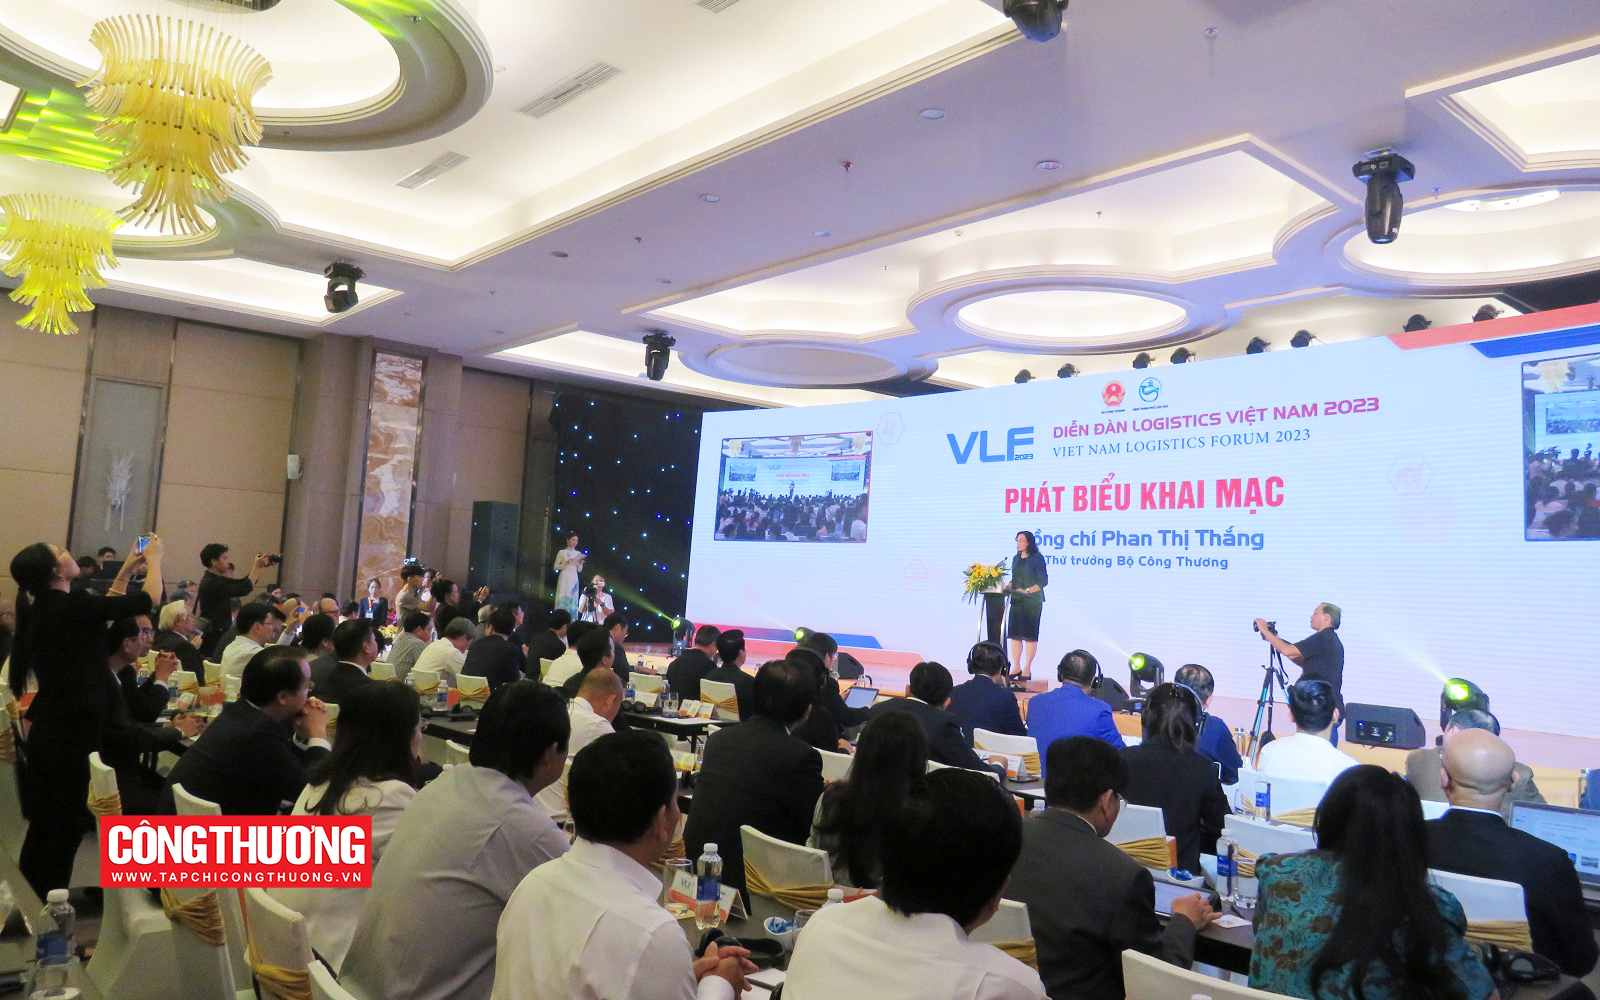 Giải pháp nào phát triển nhanh, bền vững lĩnh vực dịch vụ logistics Việt Nam?